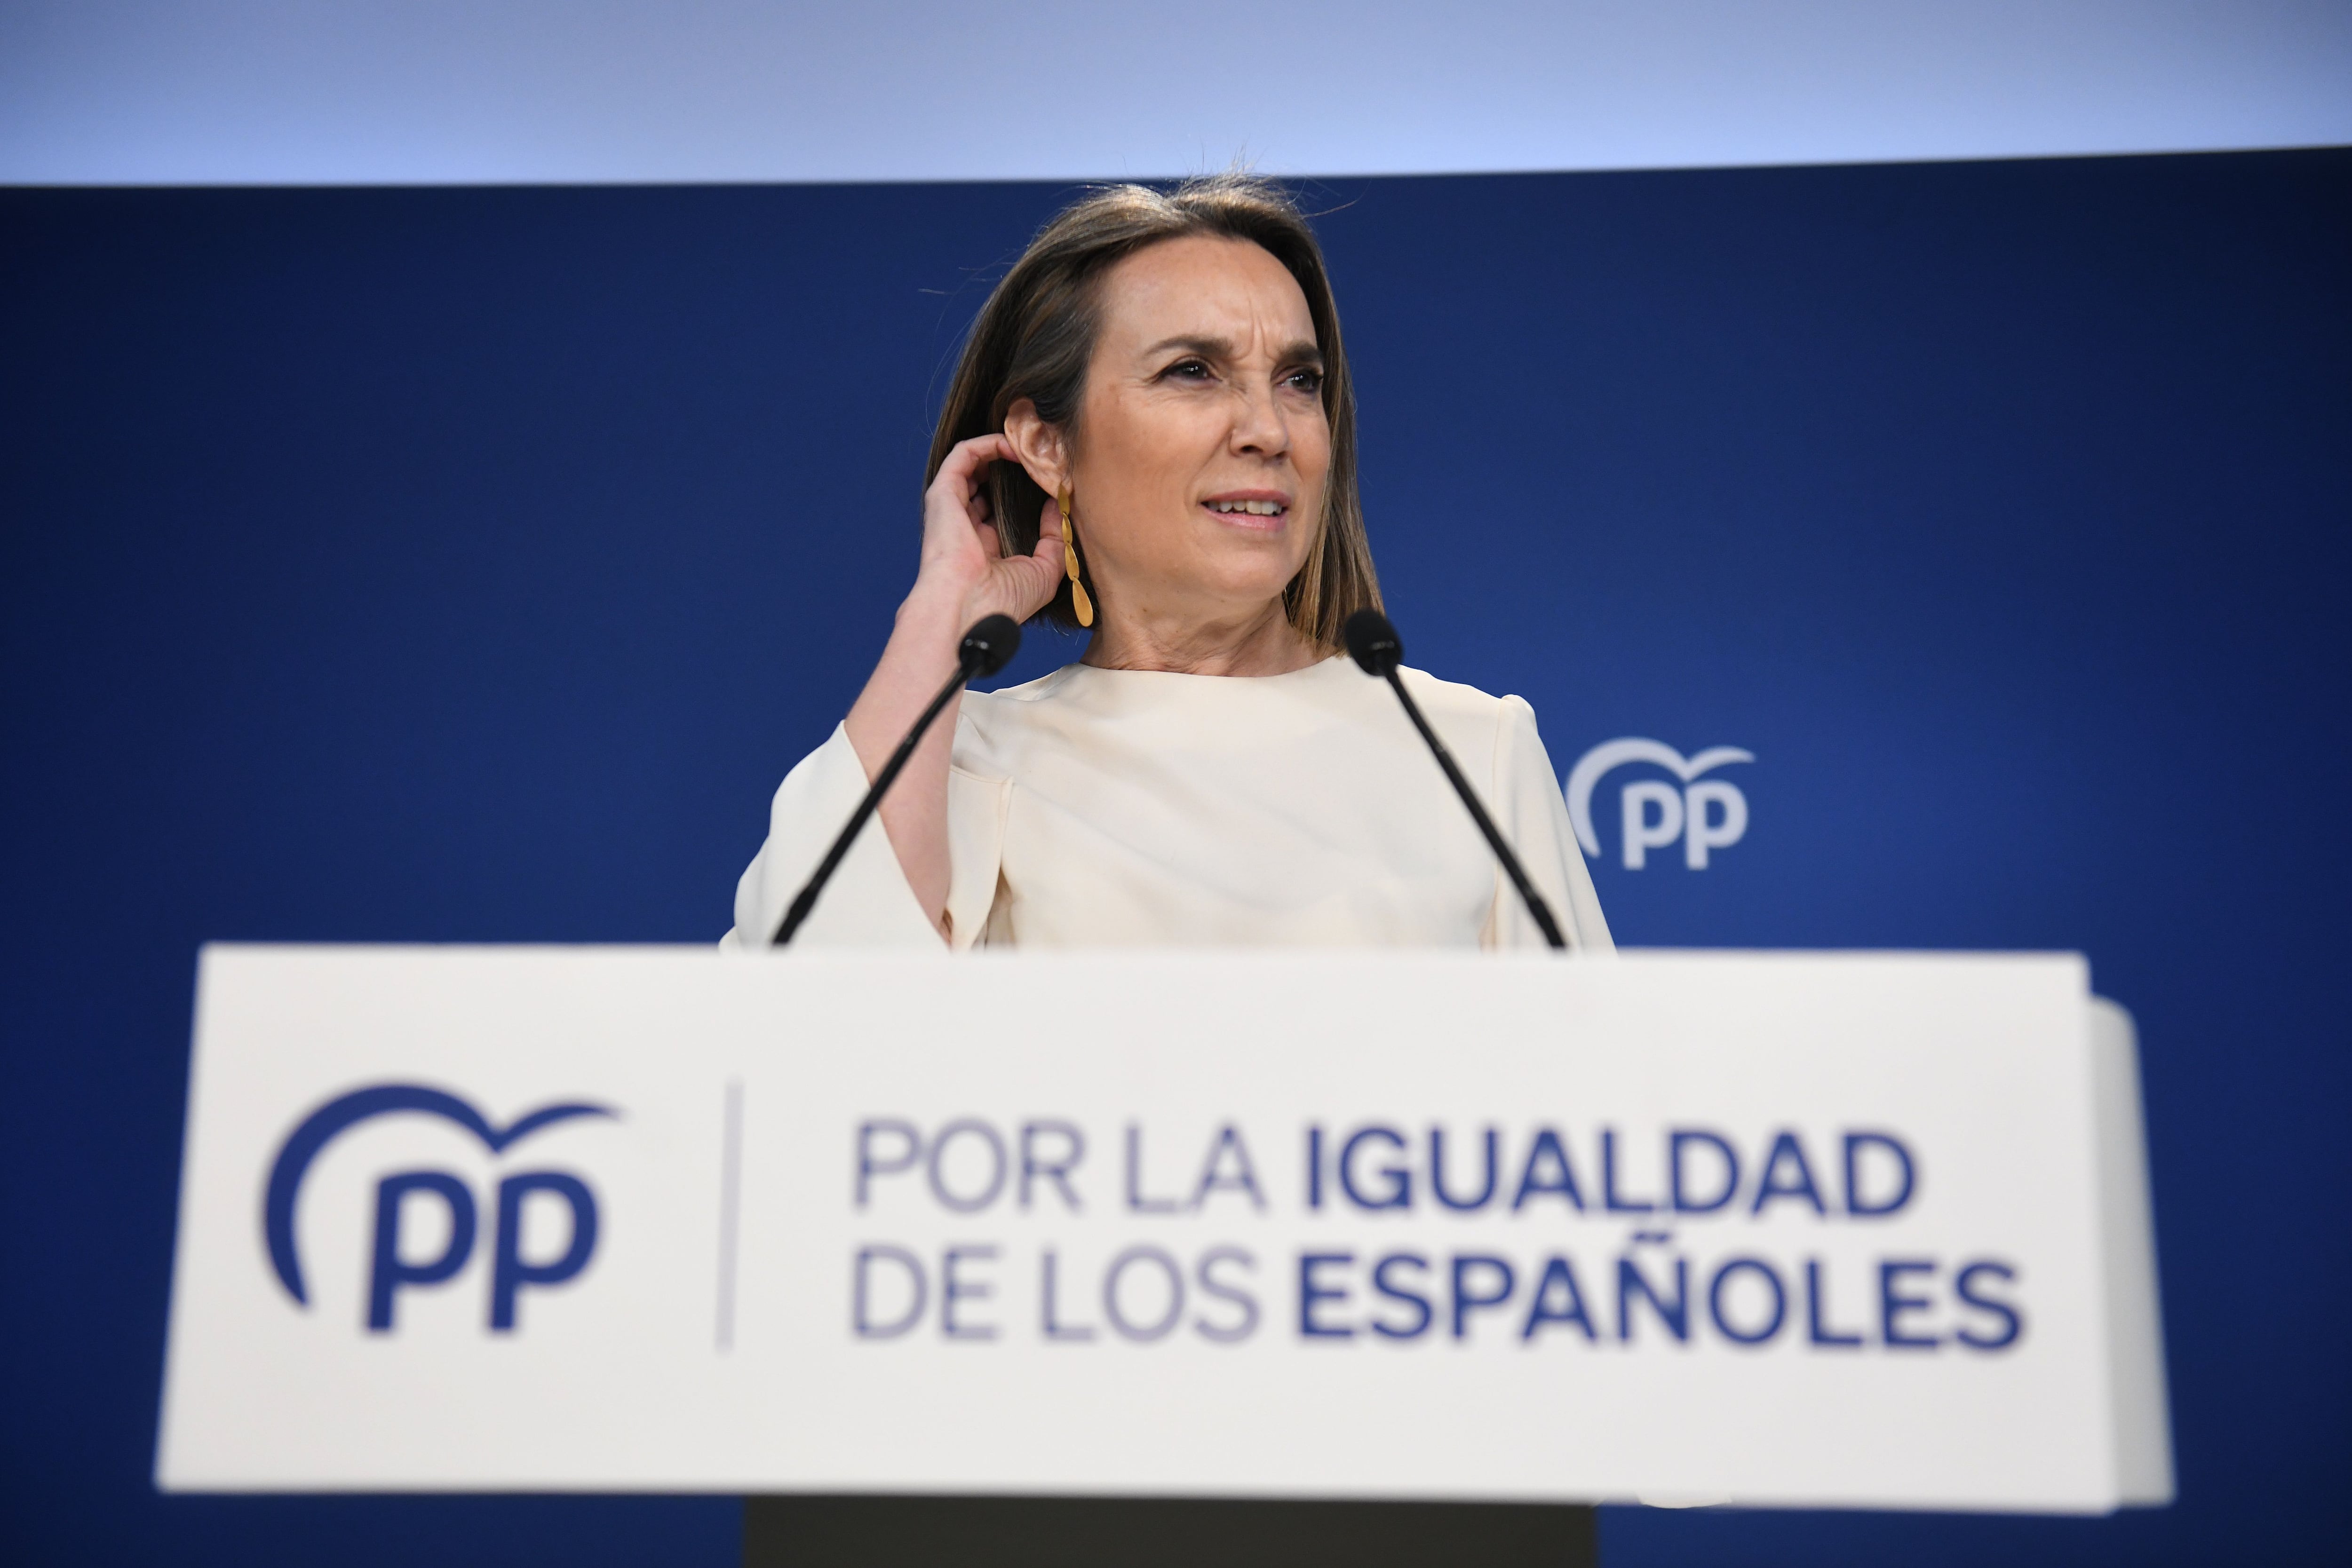 El PP sale en defensa de Aznar por la gestión del 11-M: “Hoy no es el día para que se dediquen a atacar a quien estaba al frente del Gobierno”